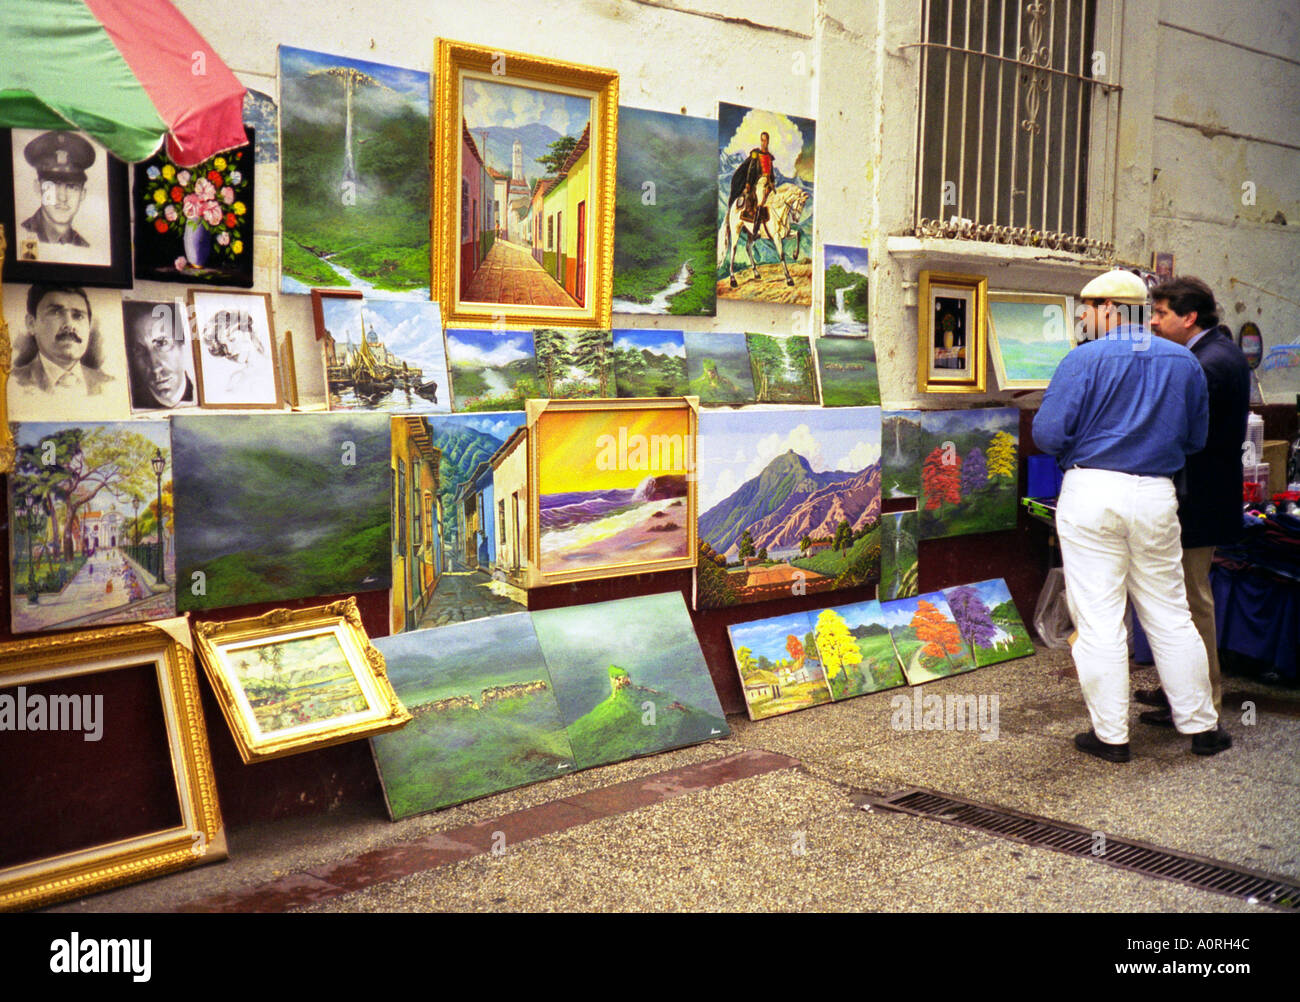 Artista callejero hombre mostrando sus pinturas en el centro de la ciudad y hablar con el concesionario San Cristóbal Venezuela Sur América Latina Foto de stock